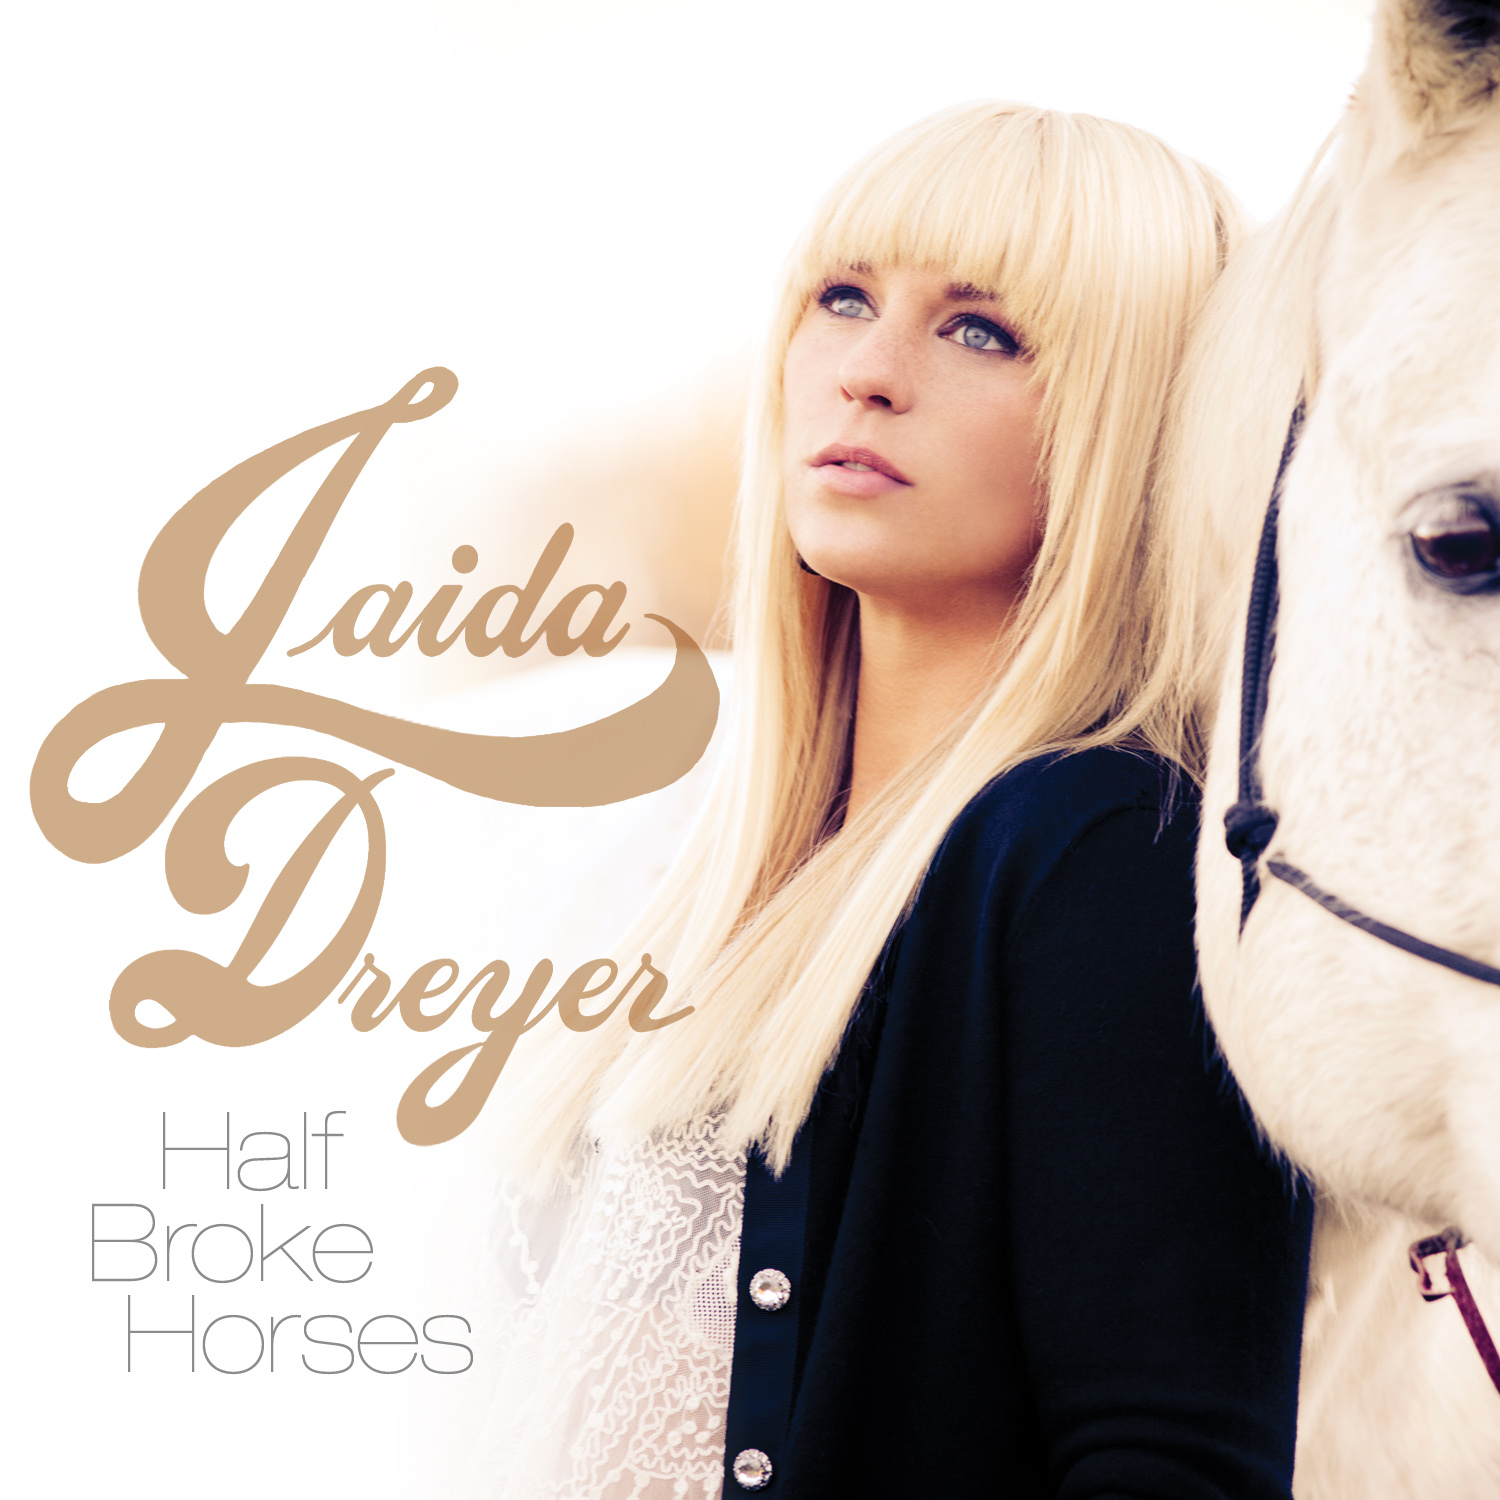 Хорс групп. Самая красивая лошадь в мире. Лошадь группа вау. I am Jaida Dreyer джайда Дрейер. 24 Horses группа Американа.